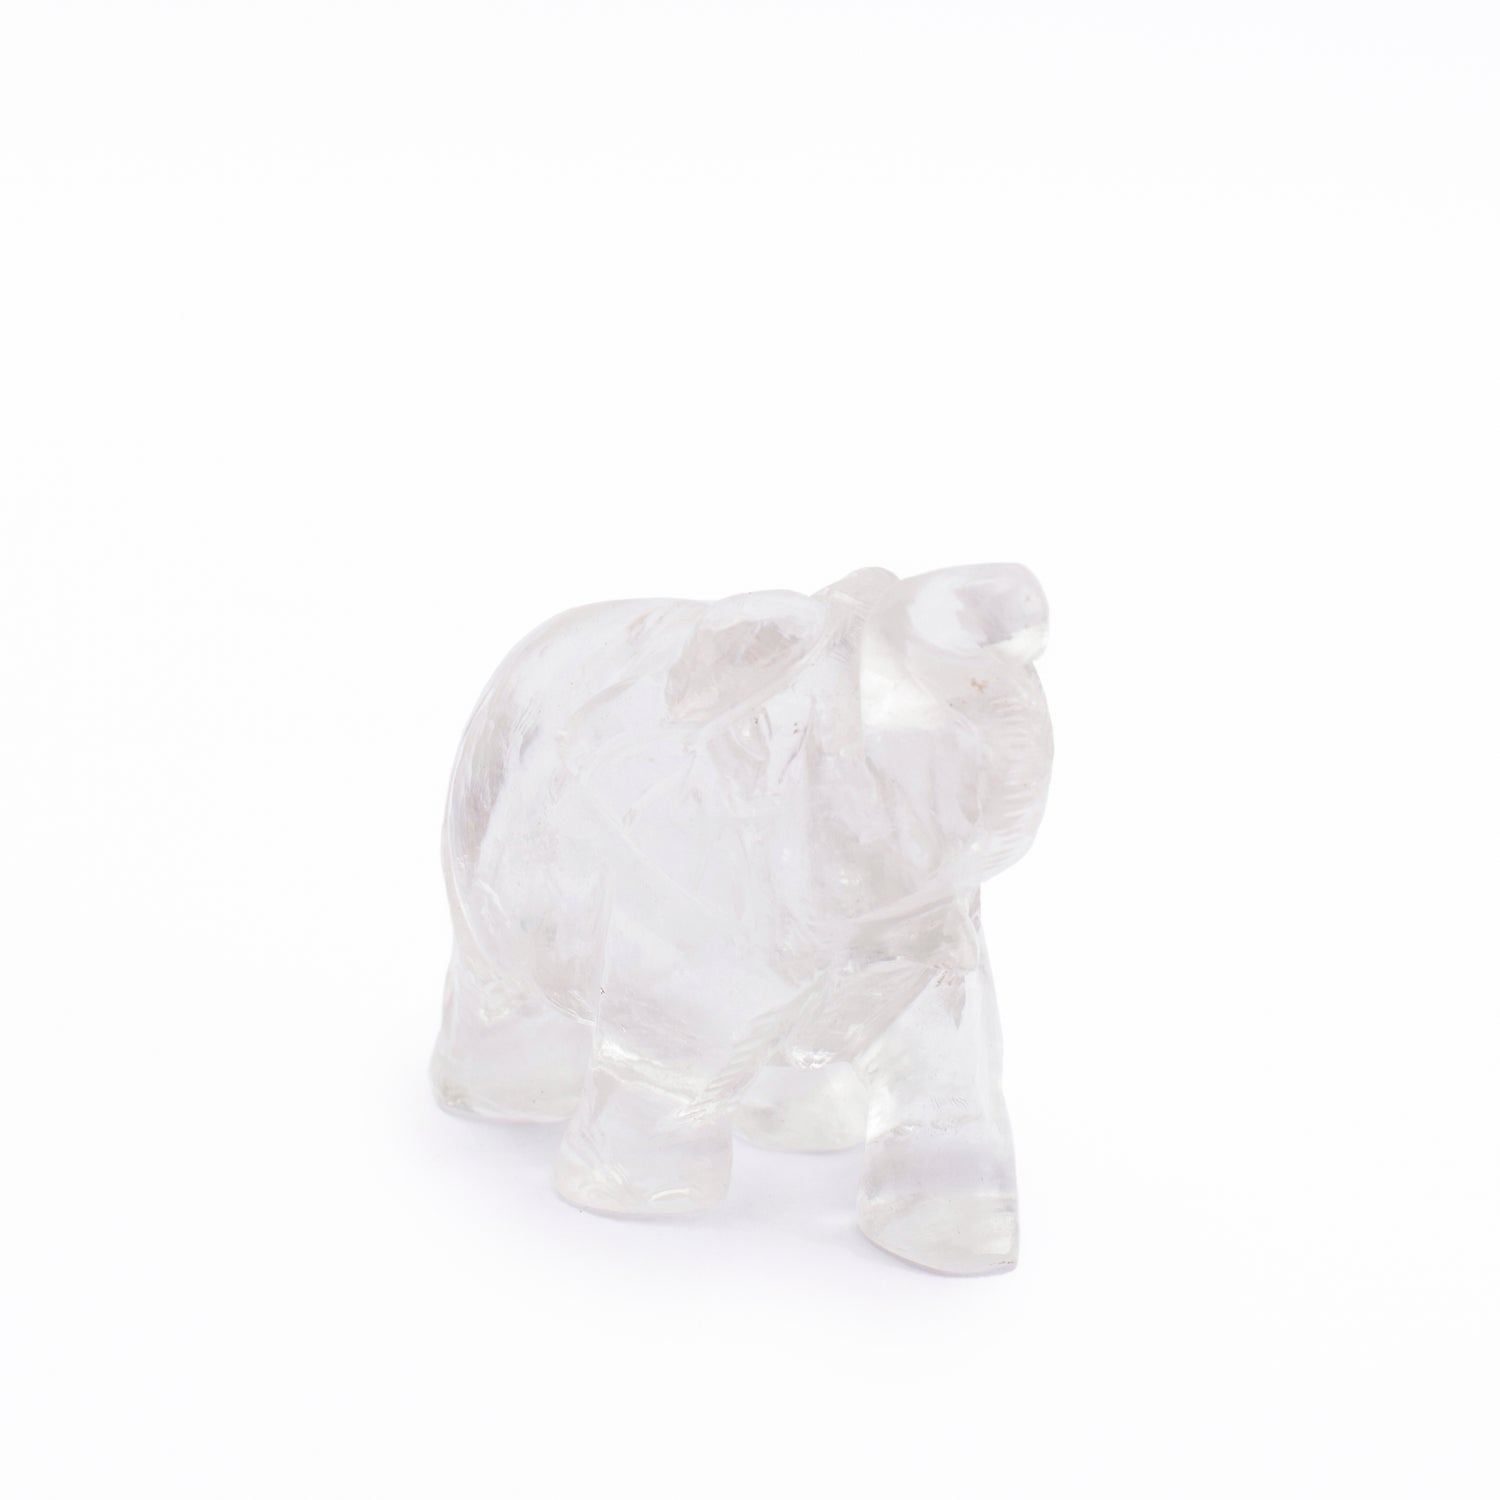 Clear Quartz Elephant Idol